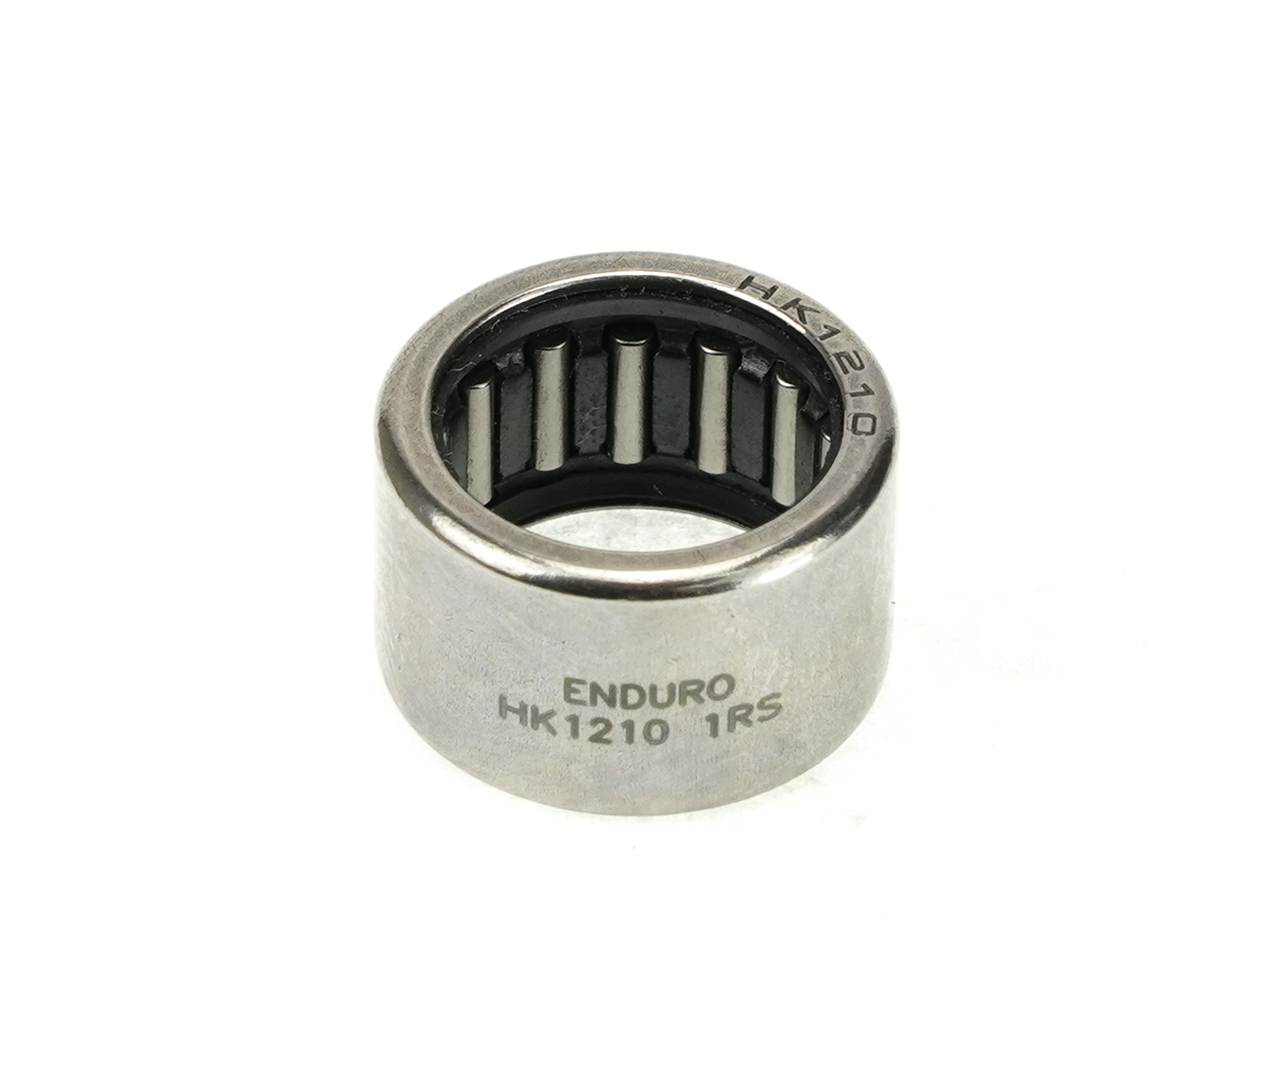 Enduro NB 12x16x10 1RS - HK 1210 1RS High Chromium Steel Drawn-Cup Needle Bearing - 12mm x 16mm x 10mm